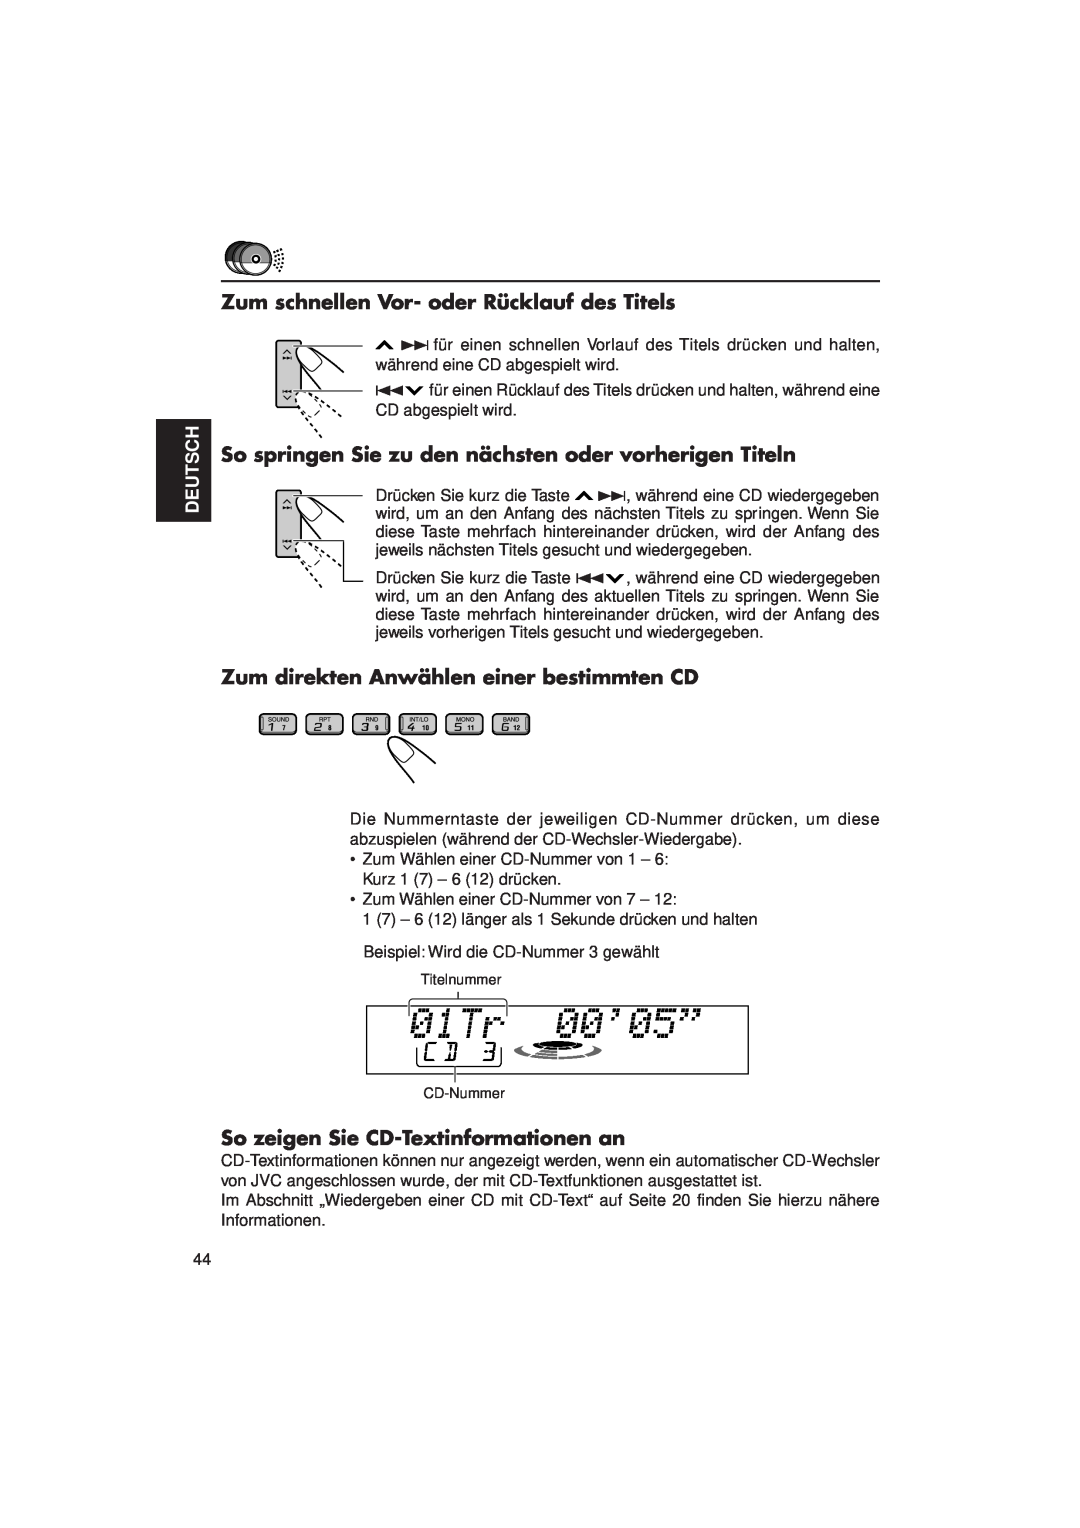 JVC KD-LX3R manual Zum schnellen Vor- oder Rücklauf des Titels, Zum direkten Anwählen einer bestimmten CD, Deutsch 